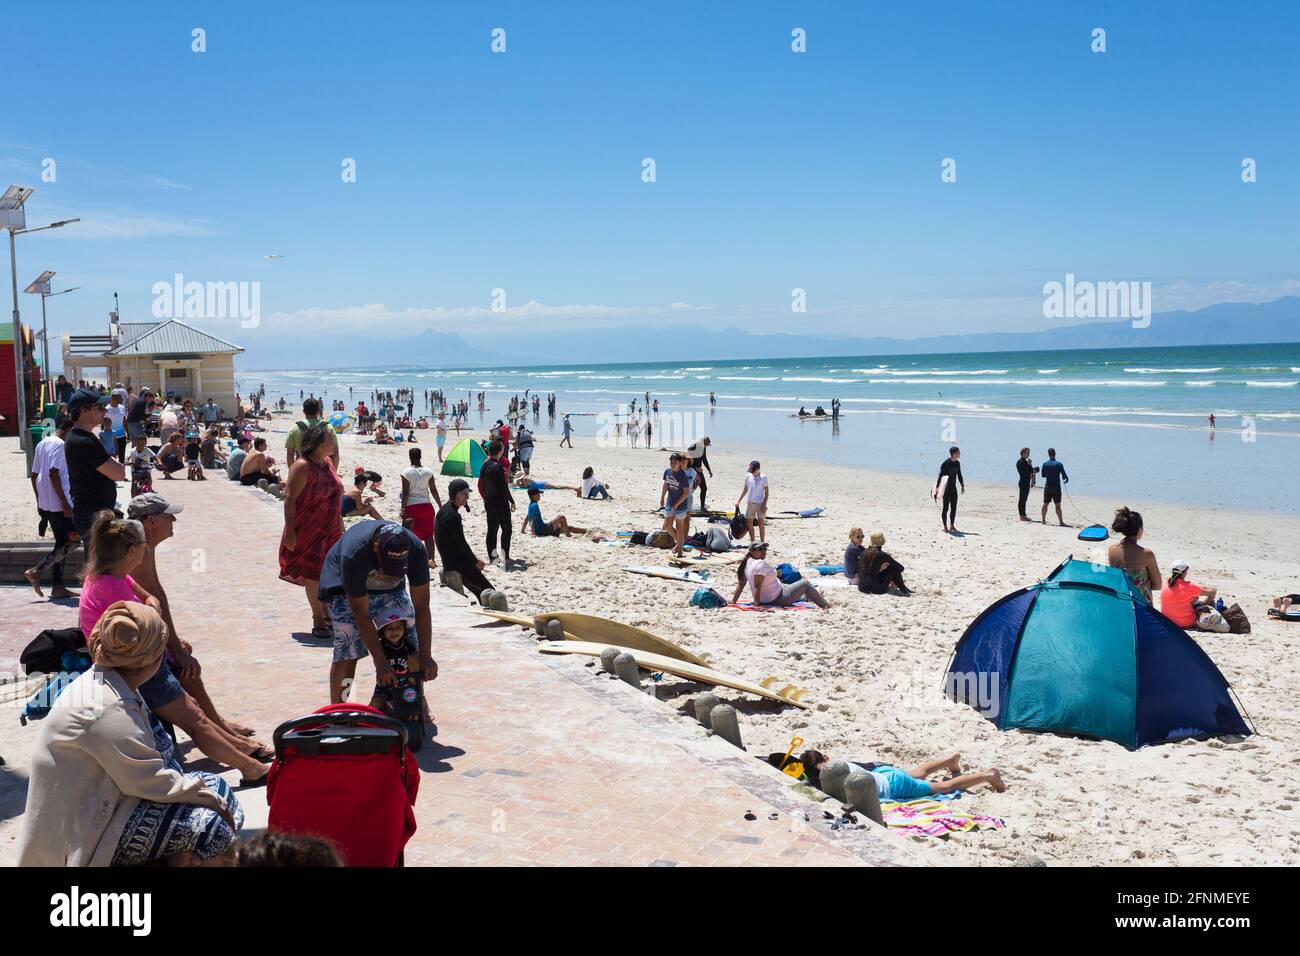 Playa de Muizenberg en un ajetreado día de verano con gente disfrutando del sol, el mar y la arena Foto de stock